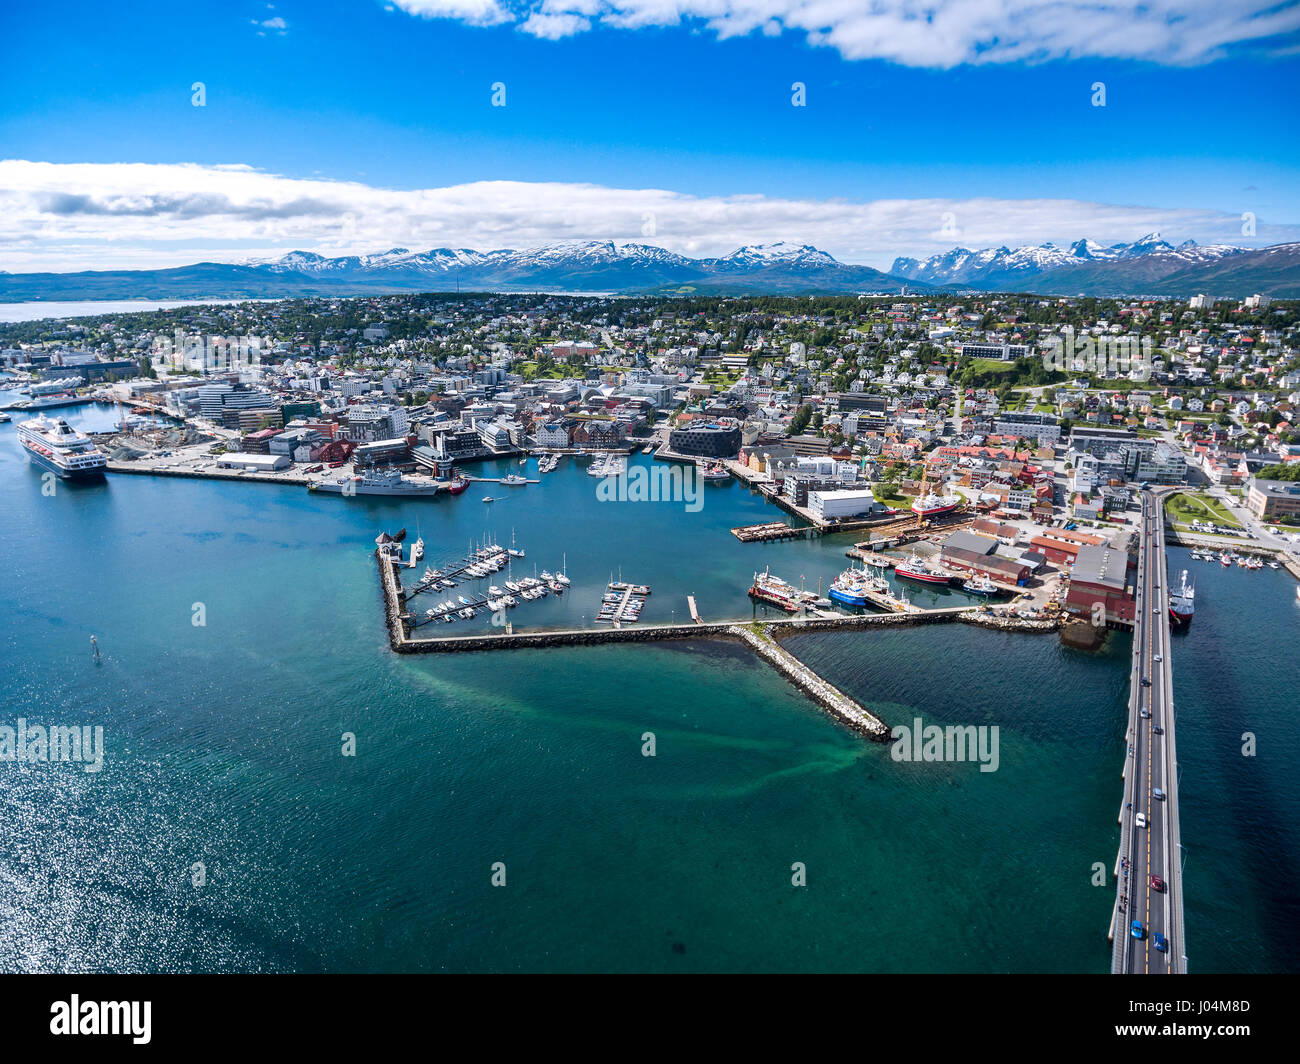 Città Tromso, Norvegia settentrionale la fotografia aerea. Tromso è considerata la città più settentrionale del mondo con una popolazione al di sopra di 50.000. Foto Stock